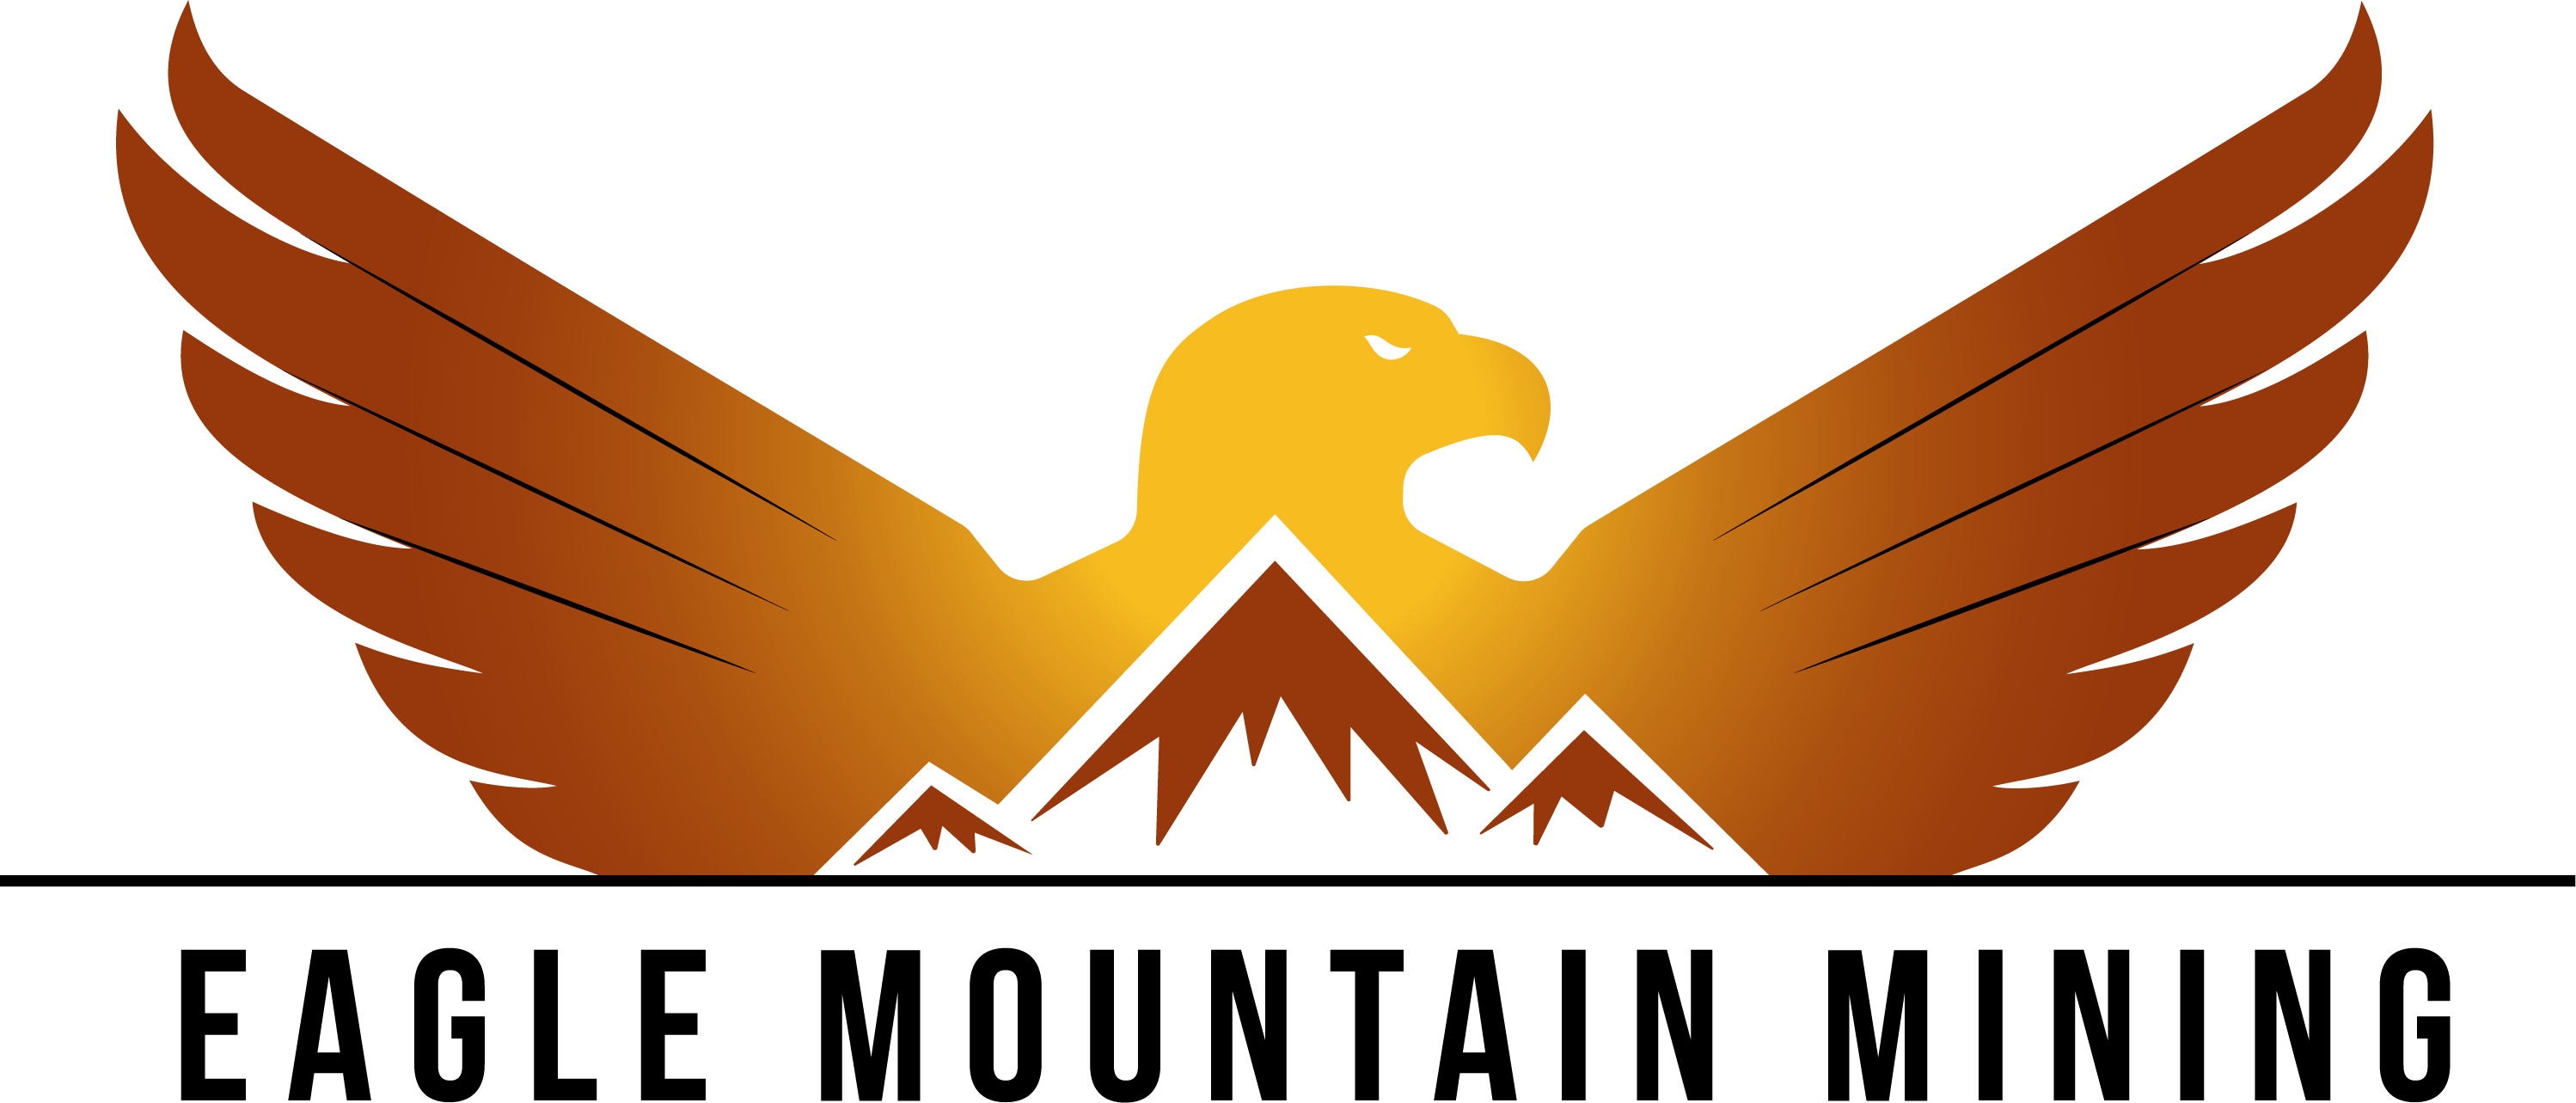 Original Mountain Logo - Original Logo Transparent